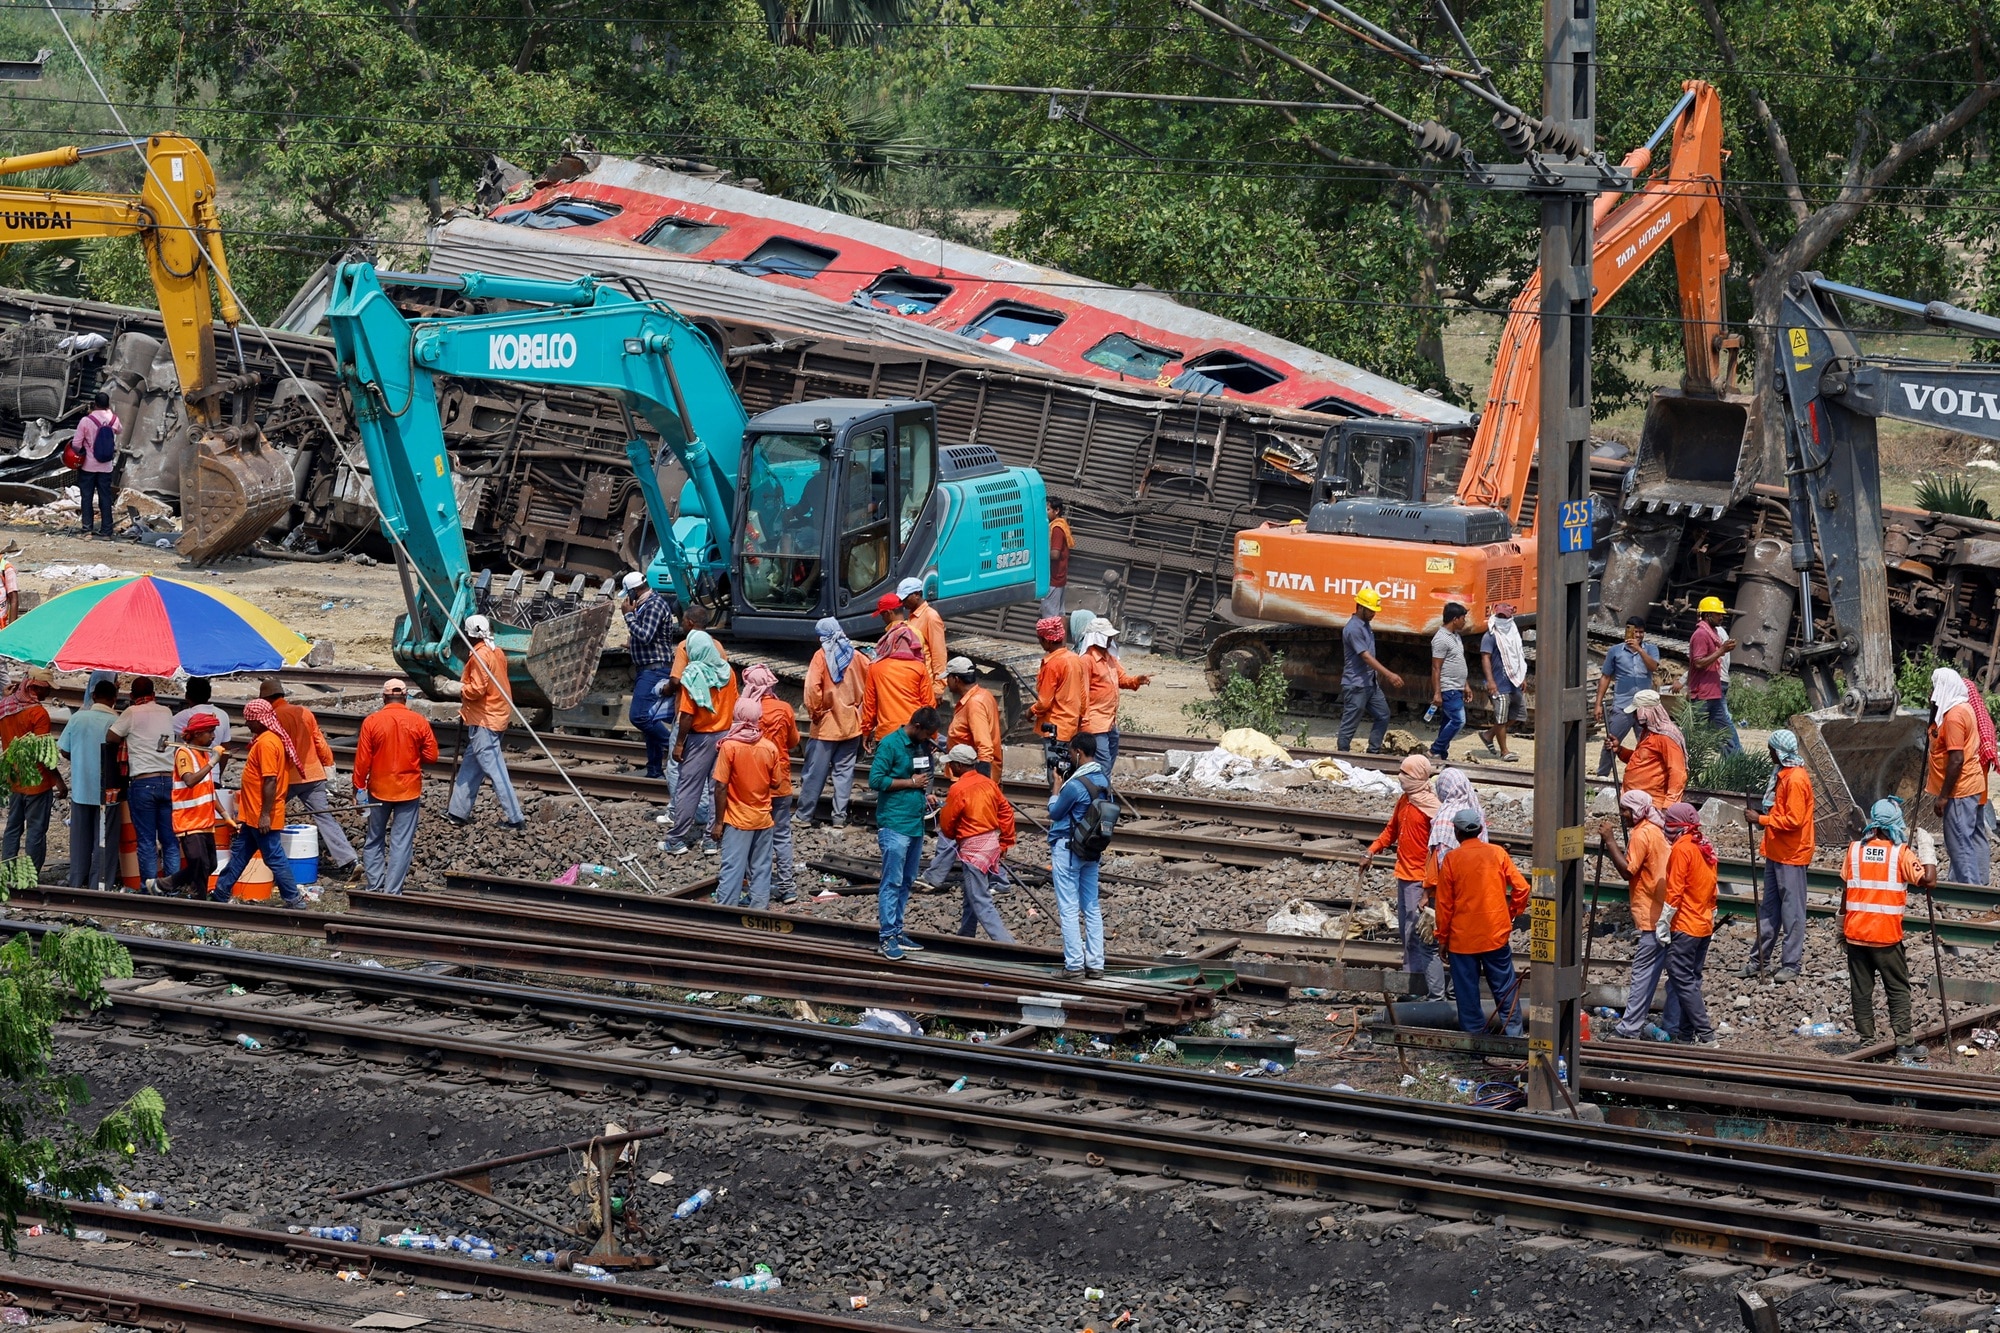 Ấn Độ xác định nguyên nhân thảm kịch đường sắt, không loại trừ hành động phá hoại - Ảnh 1.